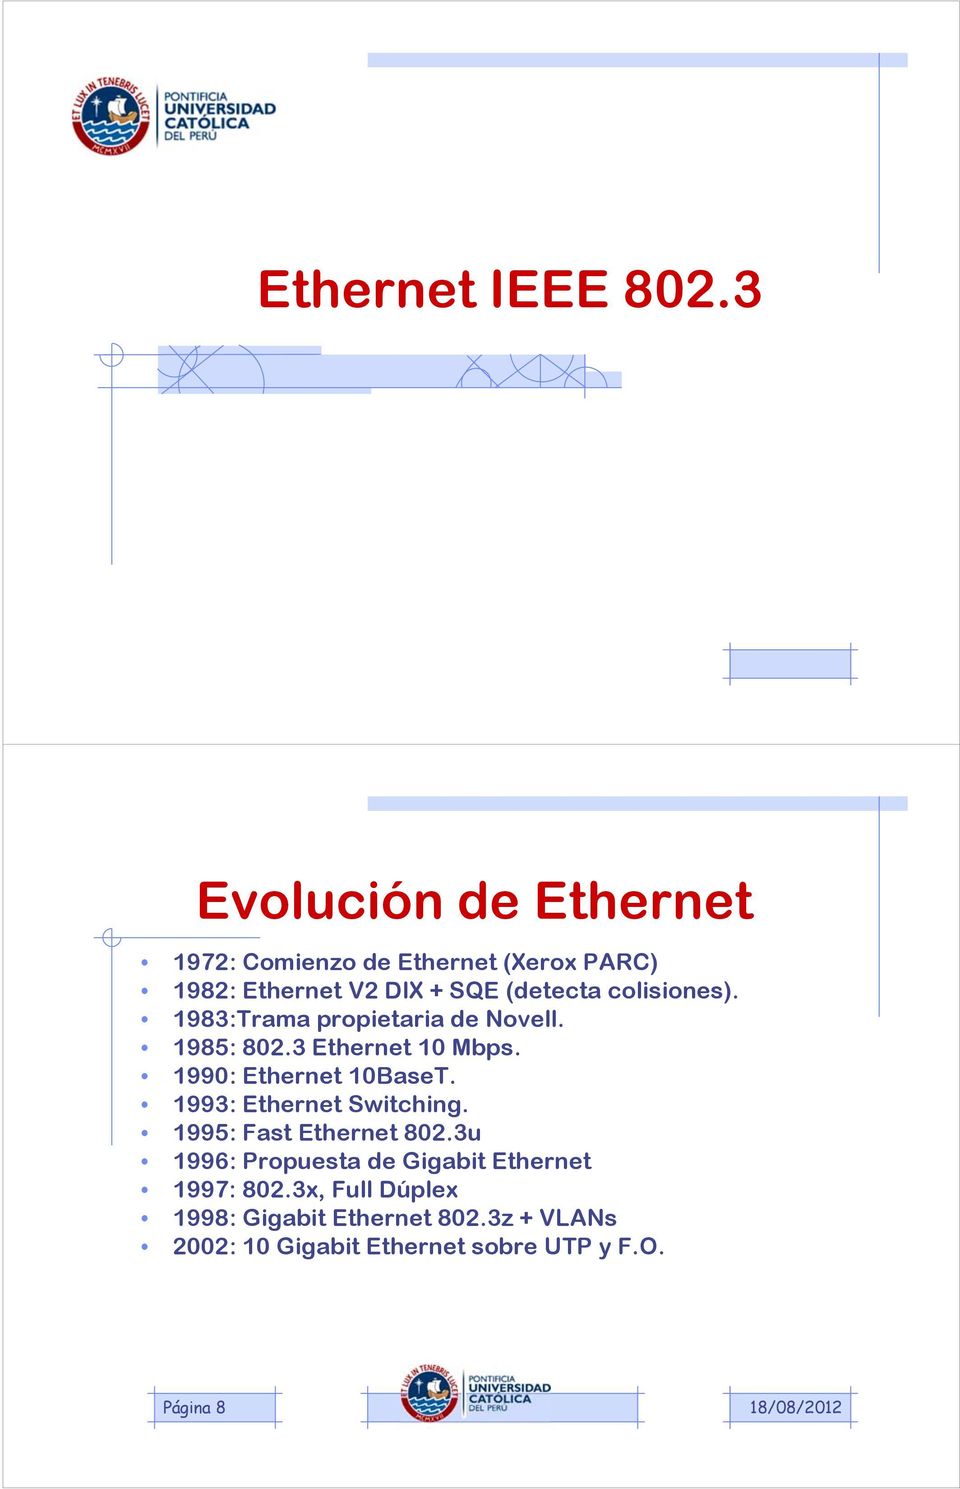 colisiones). 1983:Trama propietaria de Novell. 1985: 802.3 Ethernet 10 Mbps. 1990: Ethernet 10BaseT.